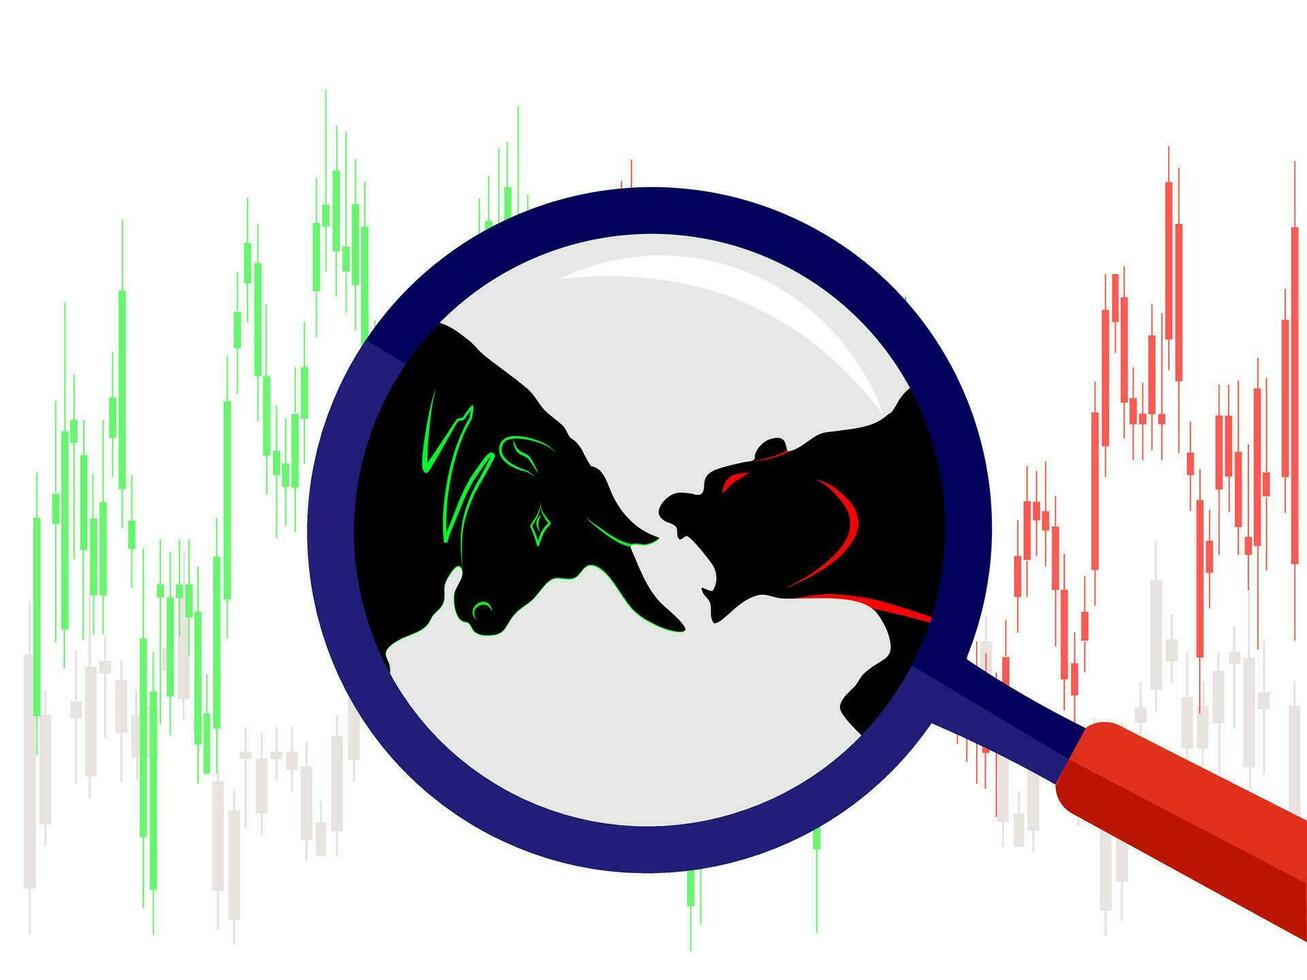 taureau contre ours symbole de Stock marché tendance sur blanc Contexte illustration vecteur